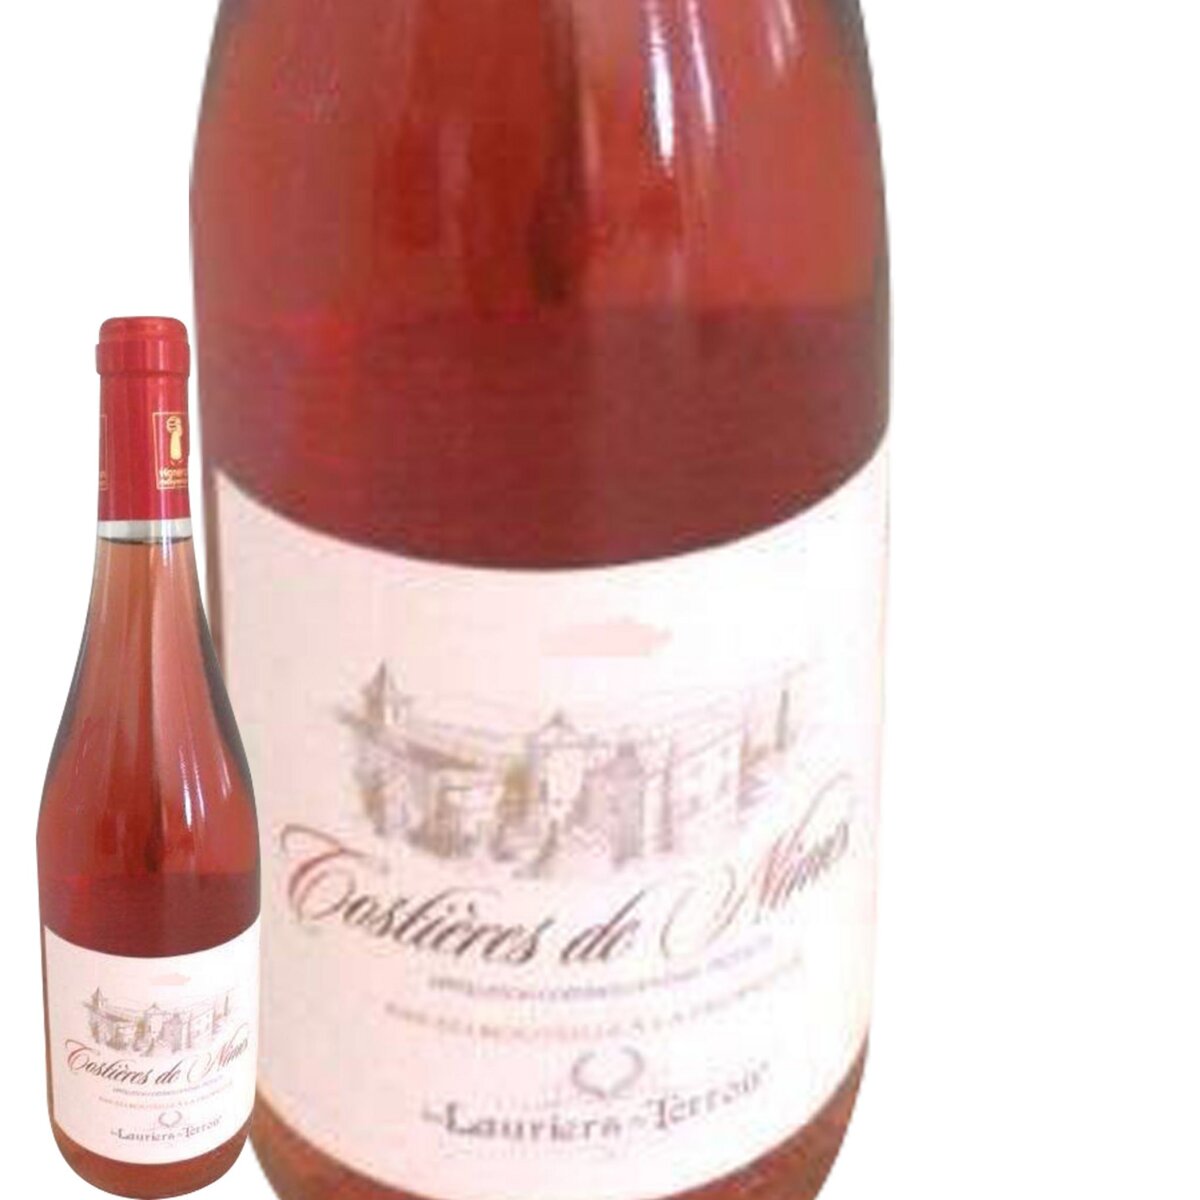 Les Lauriers du Terroir Vignes Costières de Nîmes Rosé 2014